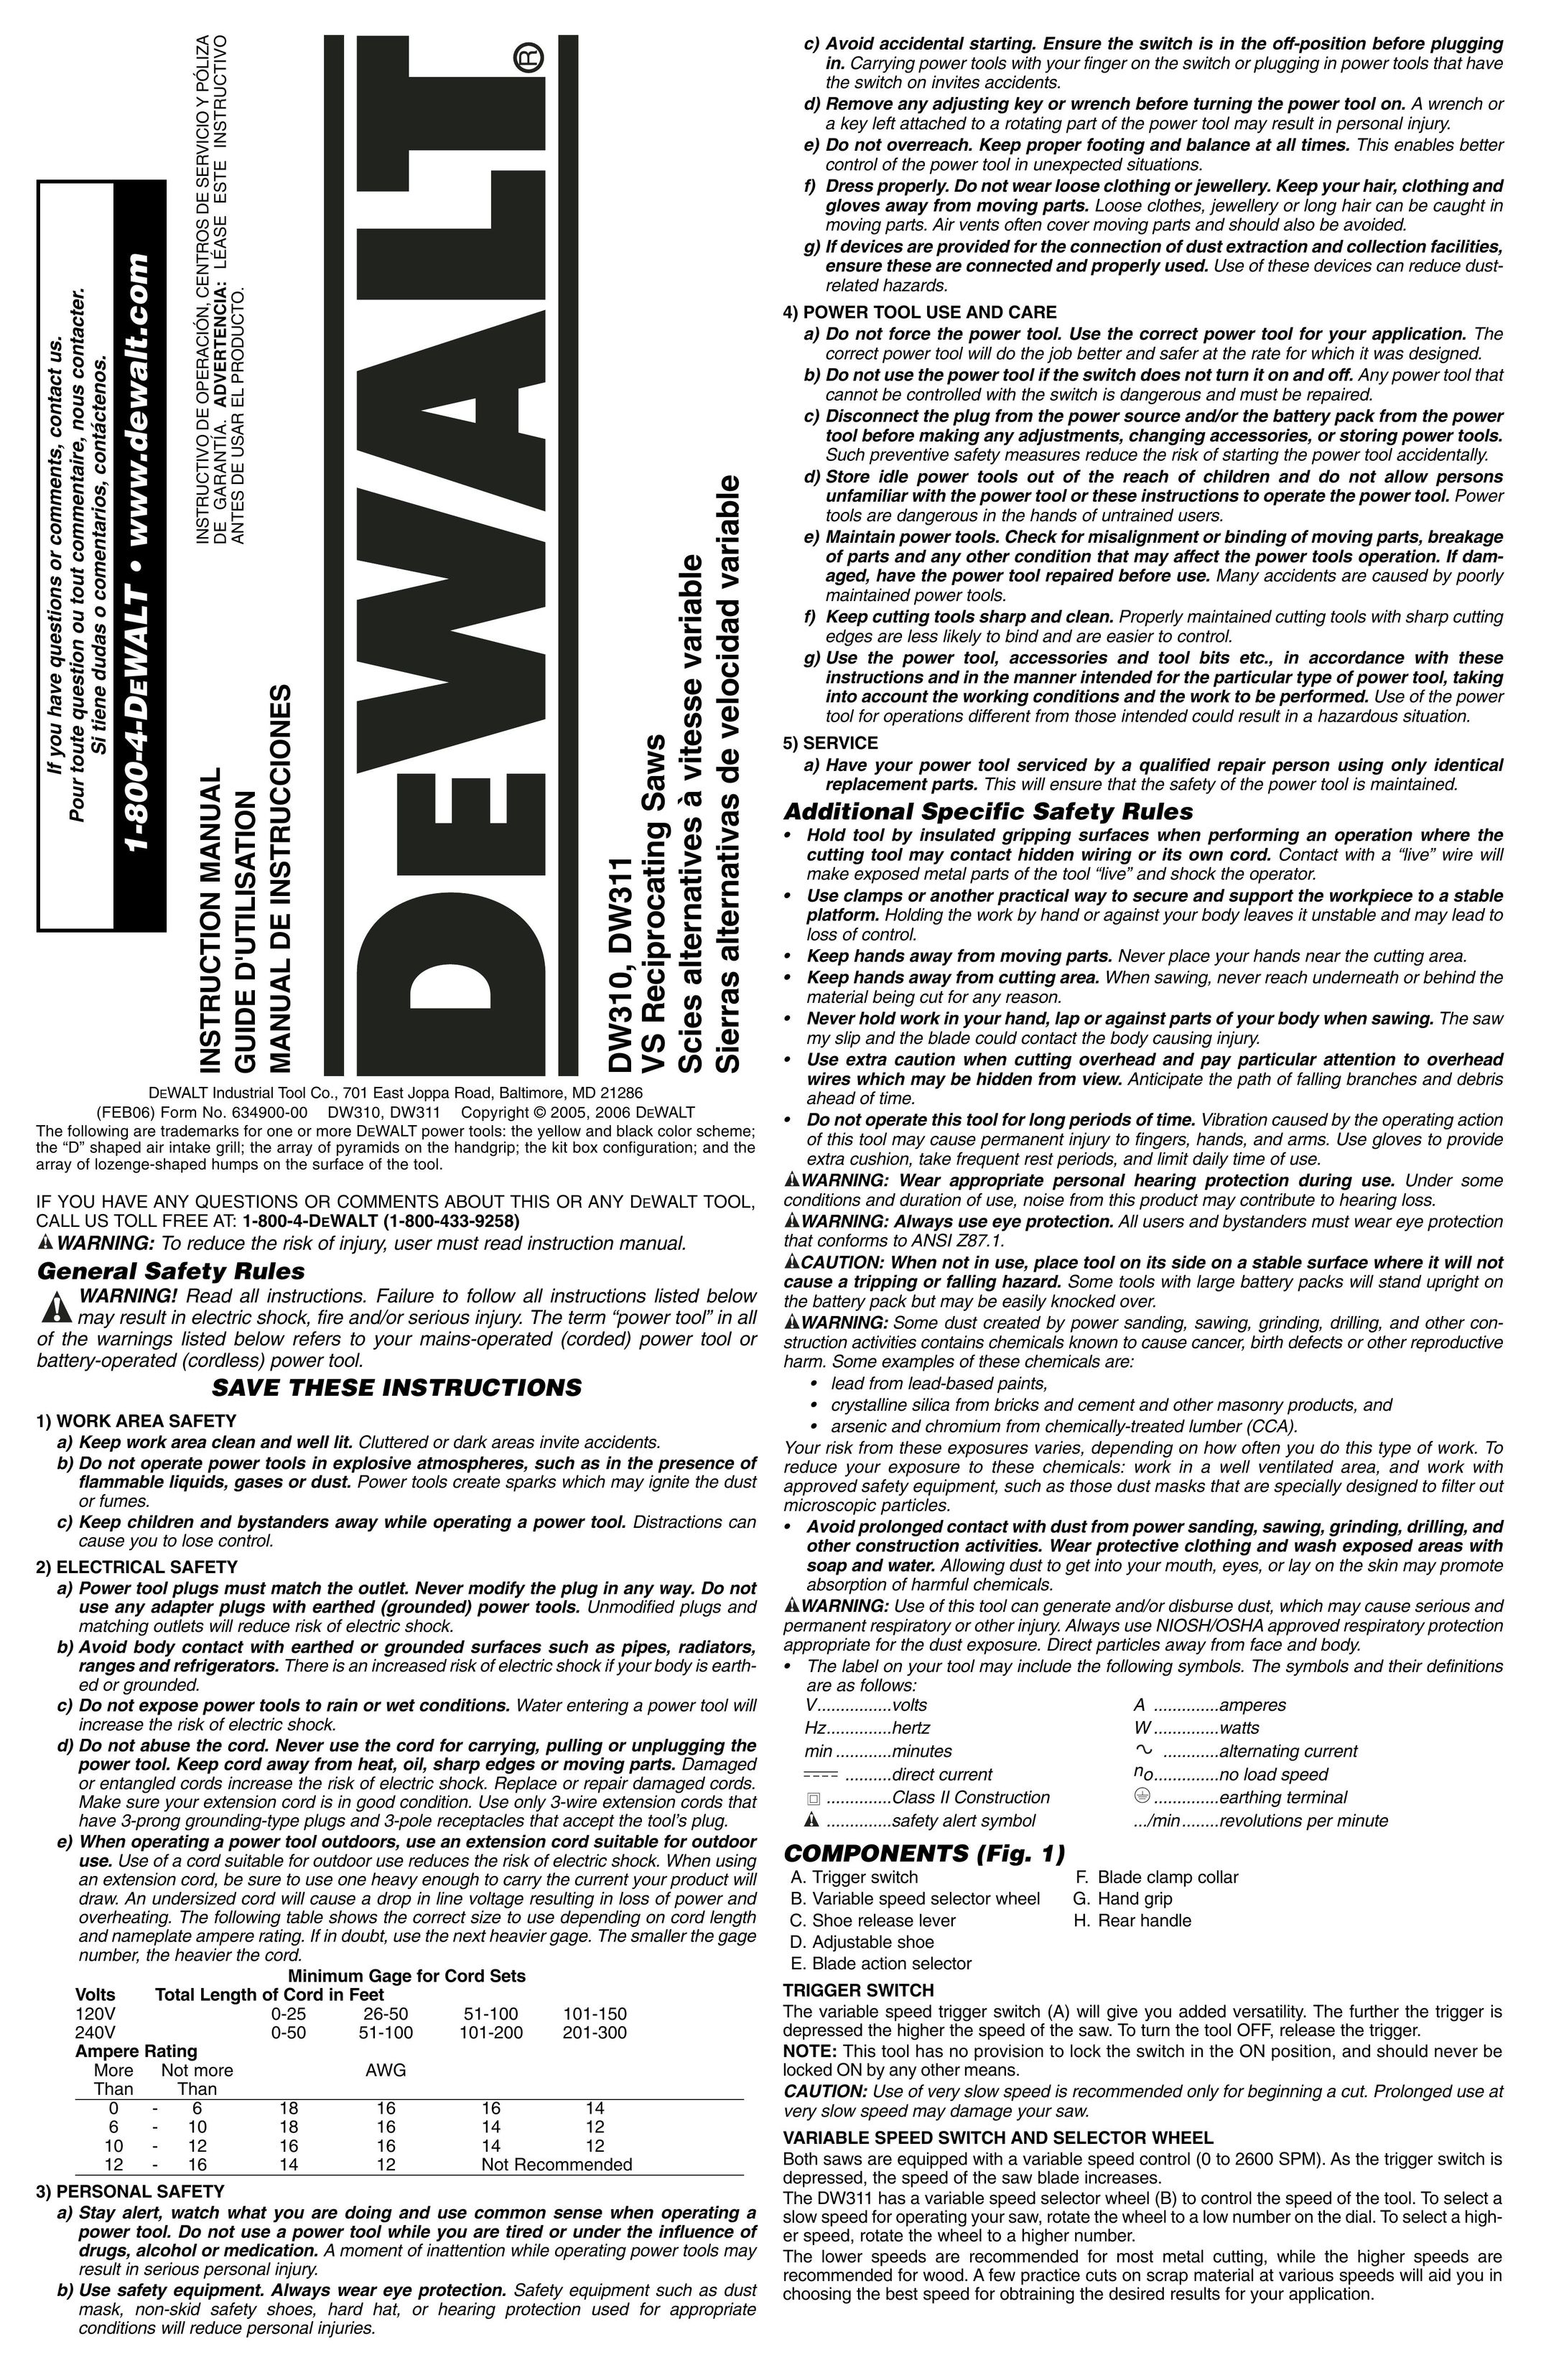 DeWalt DW310K Saw User Manual